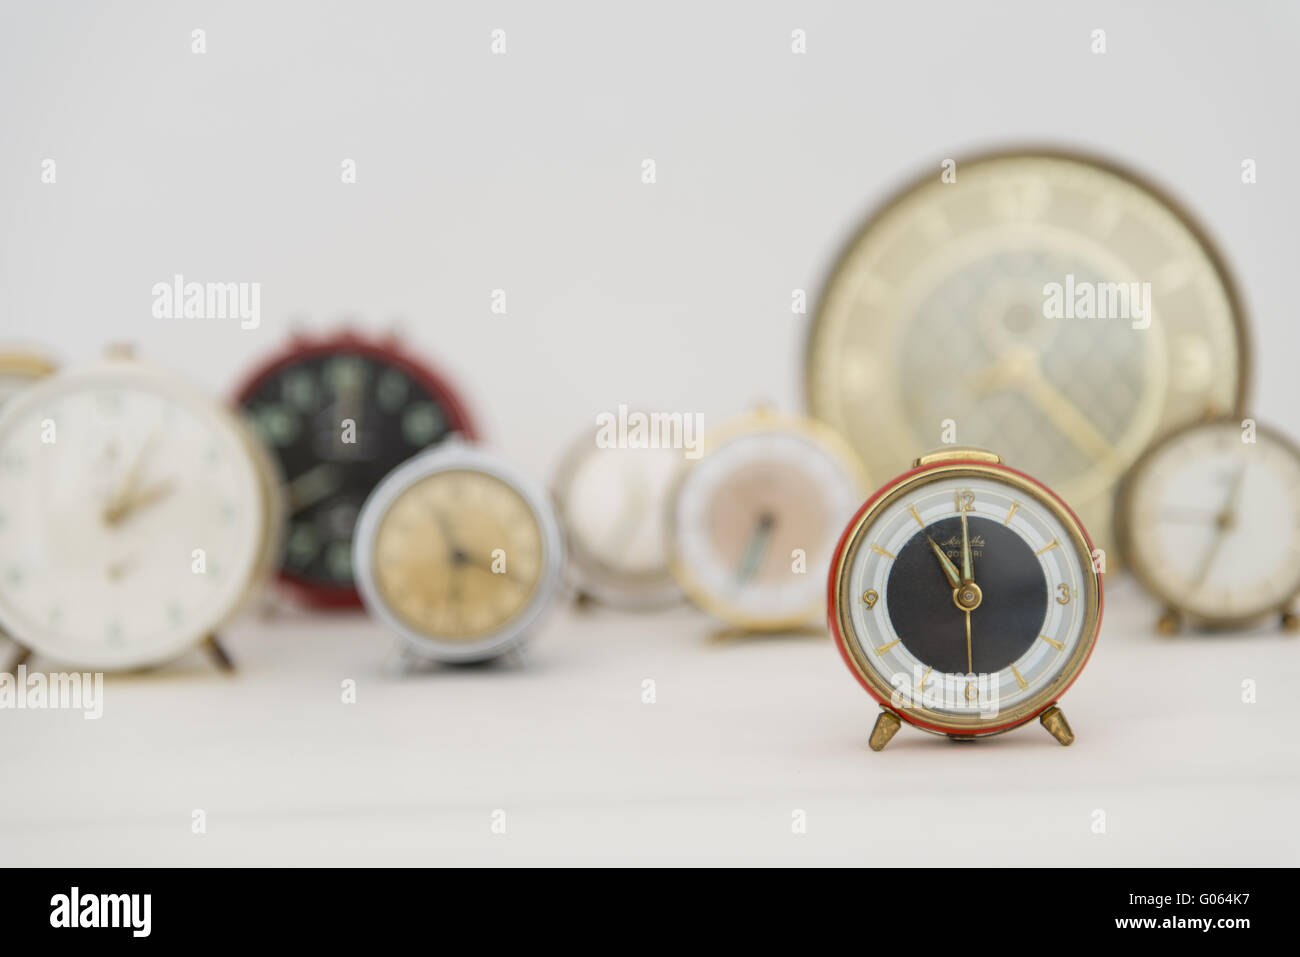 Horloges anciennes montrant différents moments Banque D'Images